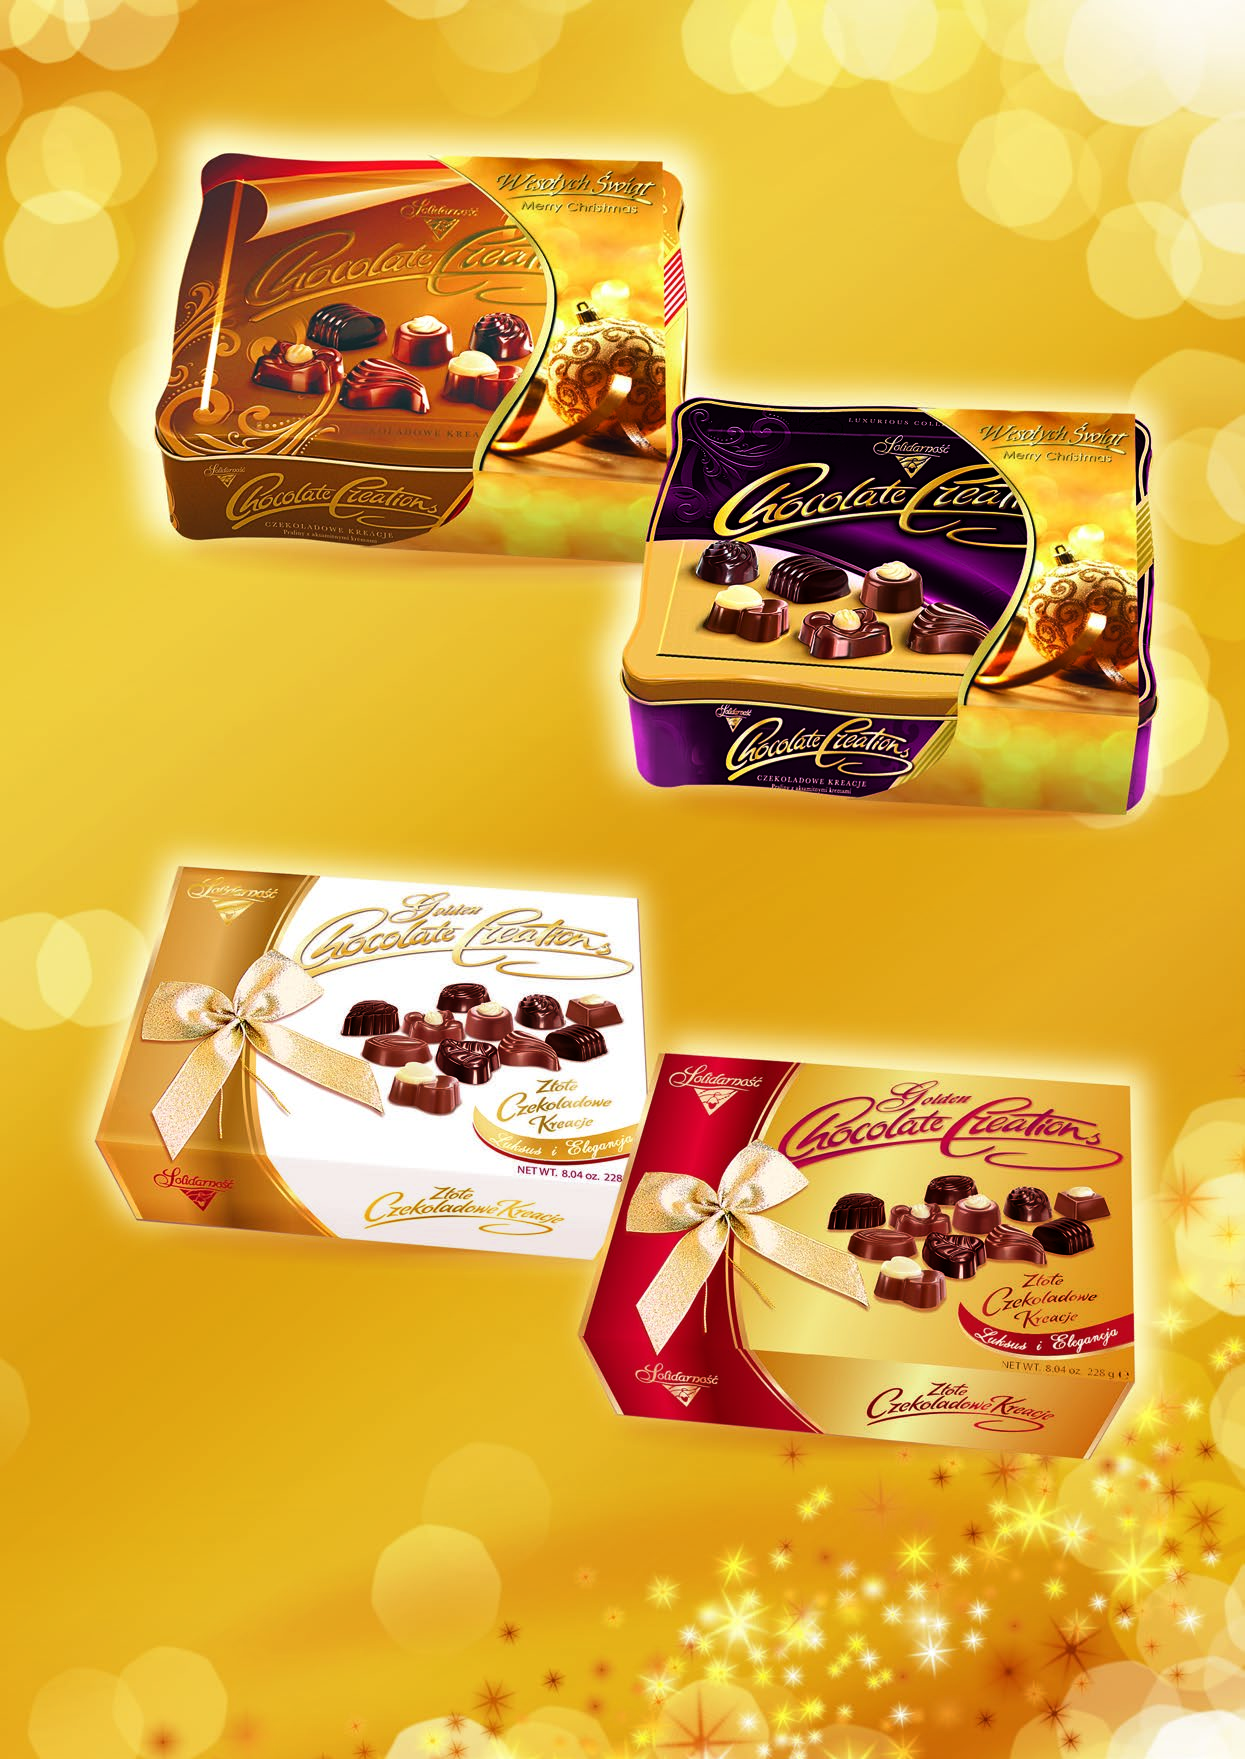 Bomboniery 21. Chocolate Creations puszka 22 g 5 001 00150 22. Złote Czekoladowe Kreacje mix 22 g 5 001 0031 21.